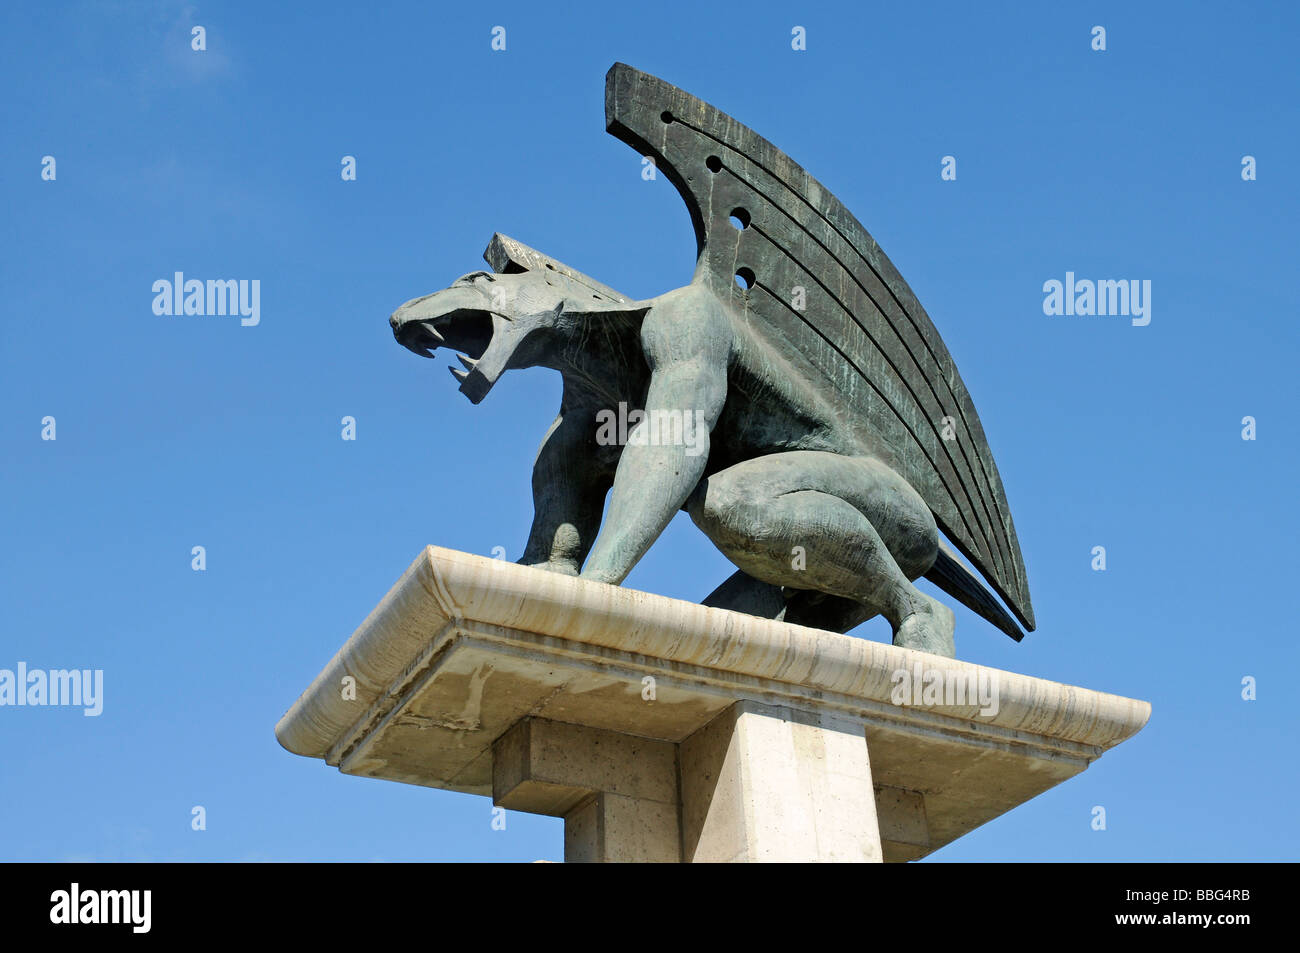 Mythical creature, lion, wings, sculpture, Puente del Regn, bridge, Valencia, Spain, Europe Stock Photo